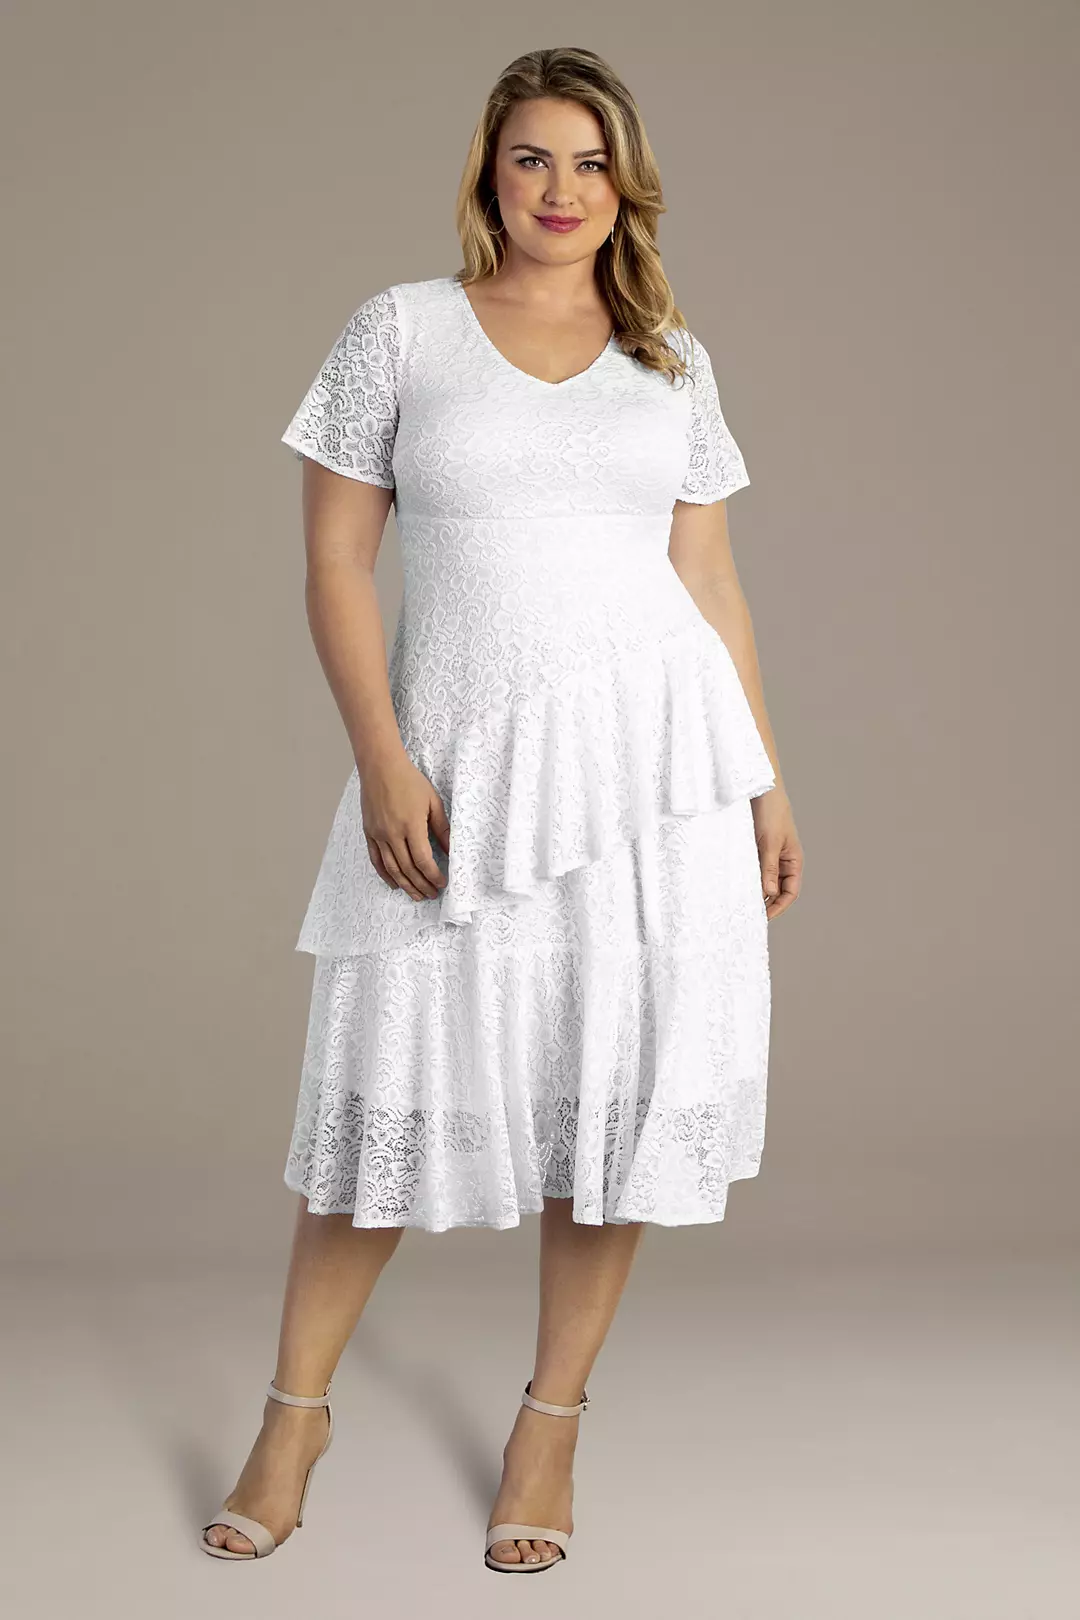 Harmony Tiered Lace Plus Size Short Wedding Dress Image